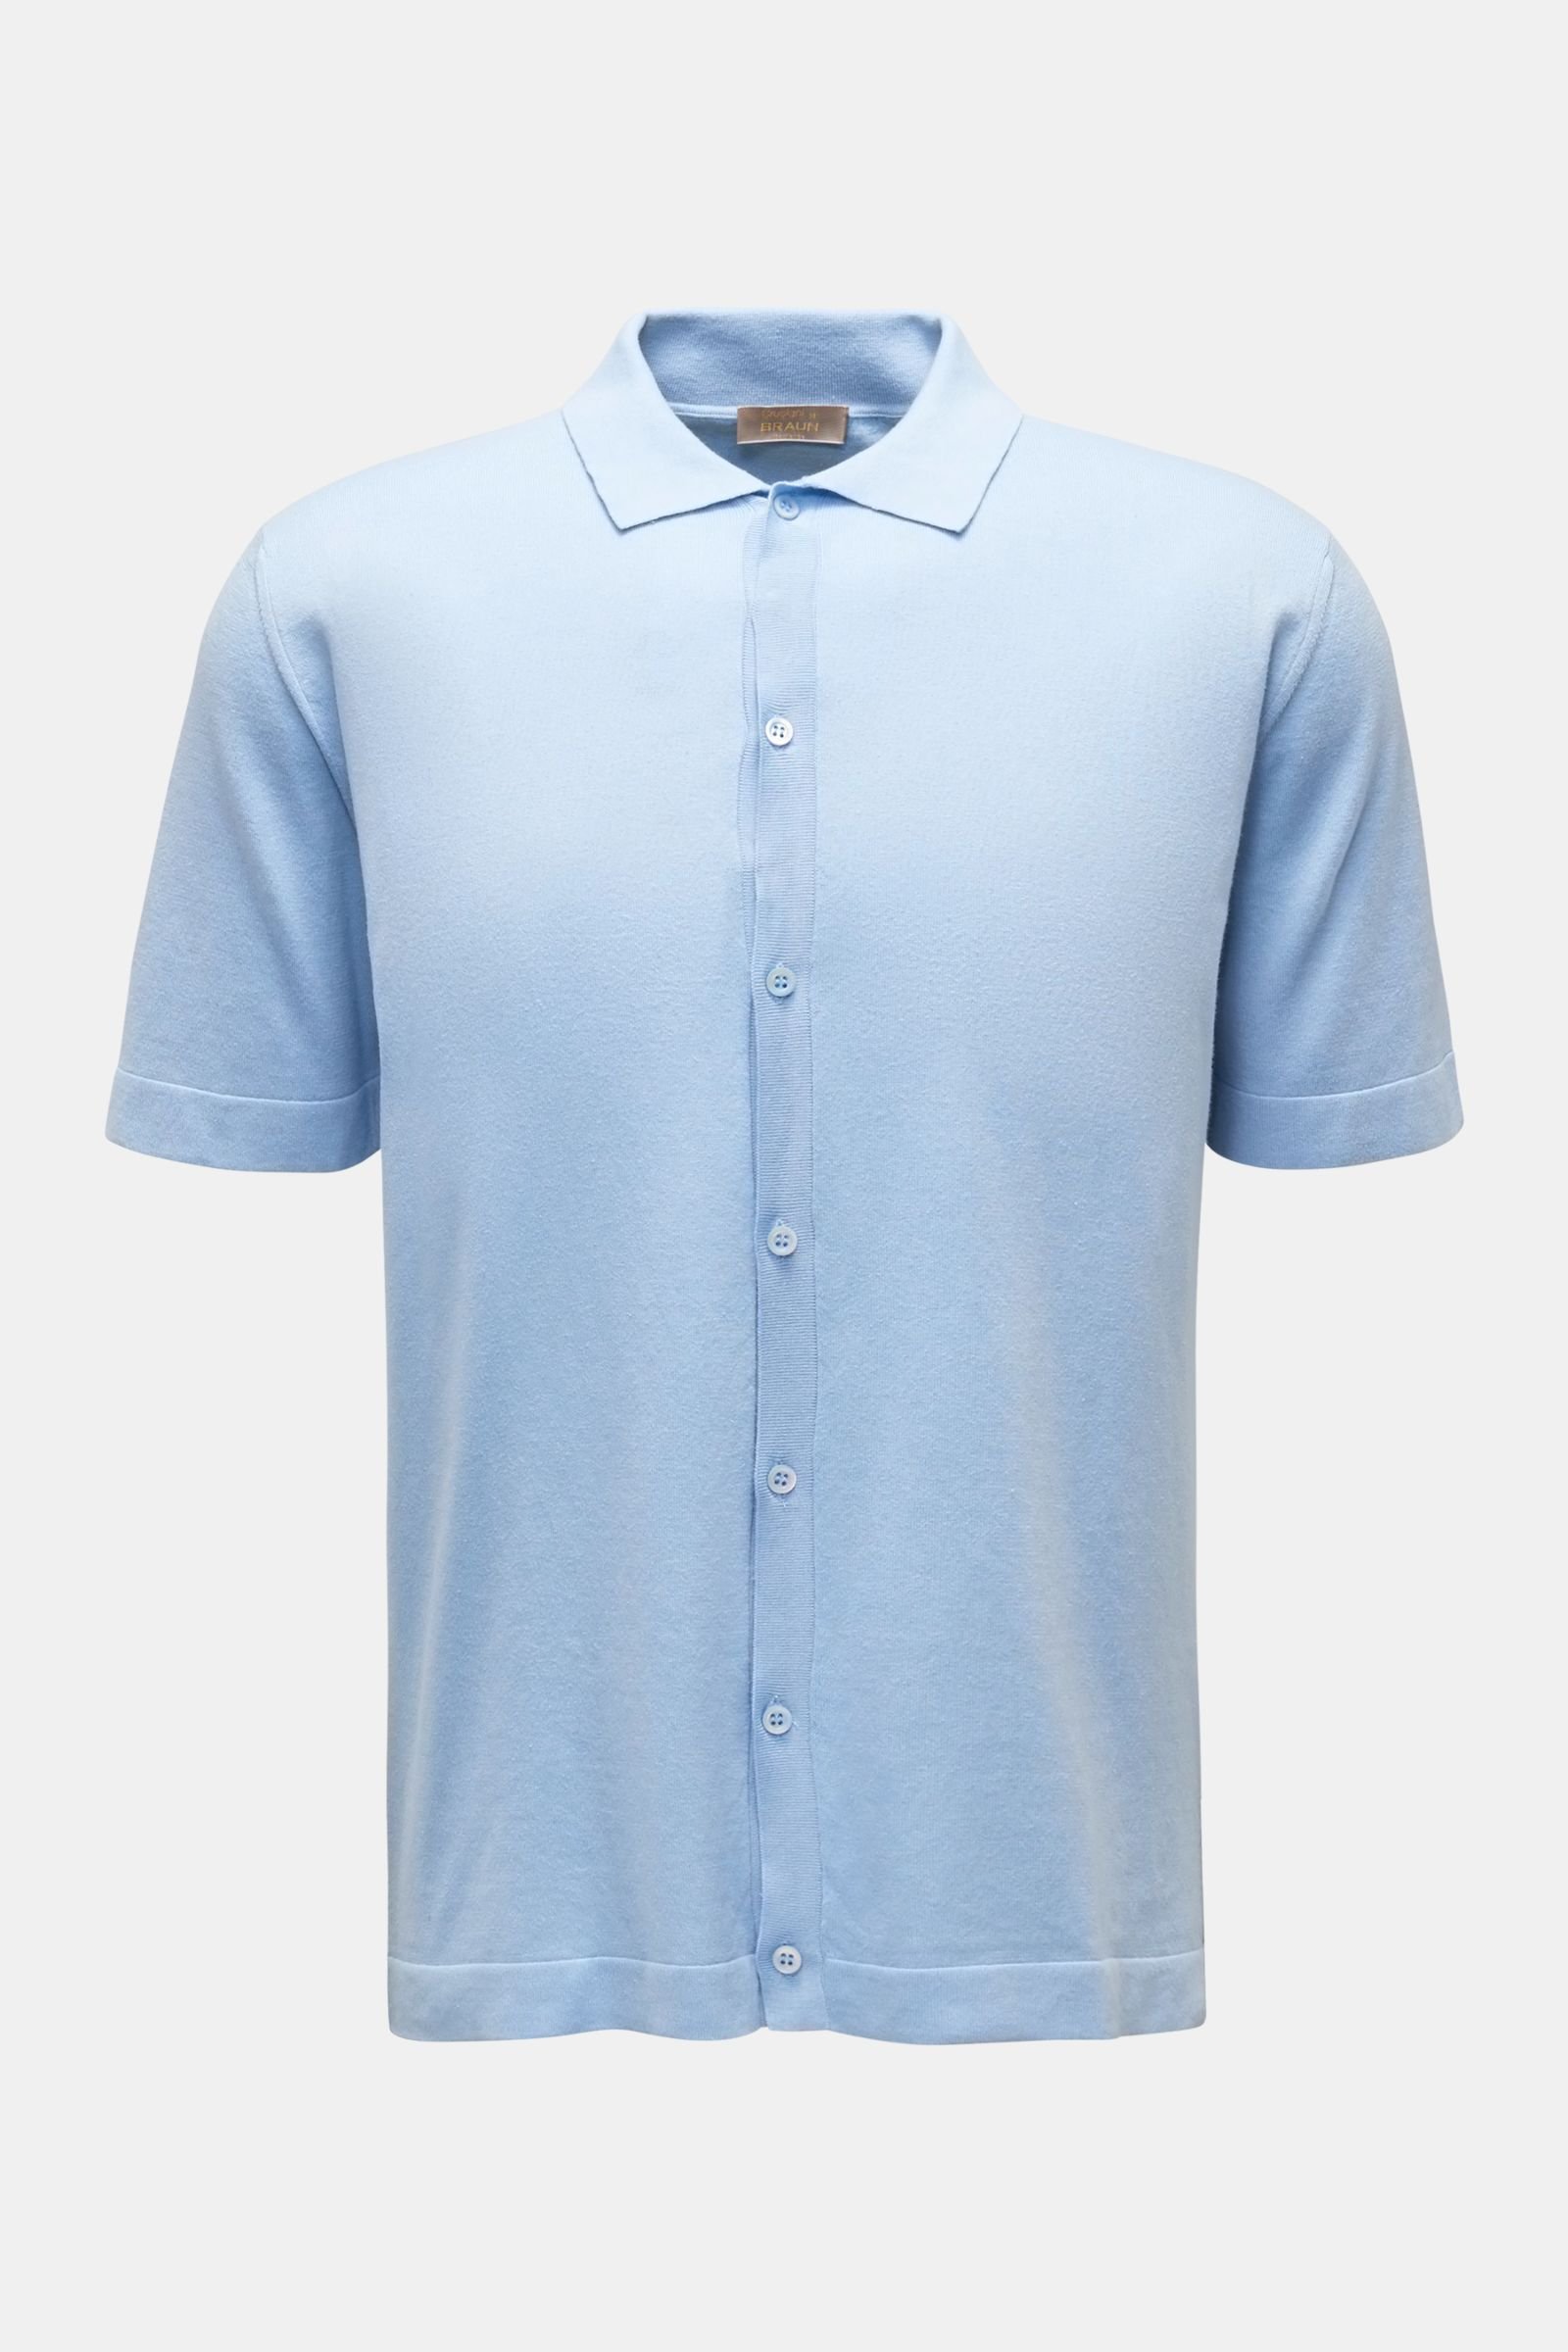 Short sleeve knit shirt narrow collar light blue